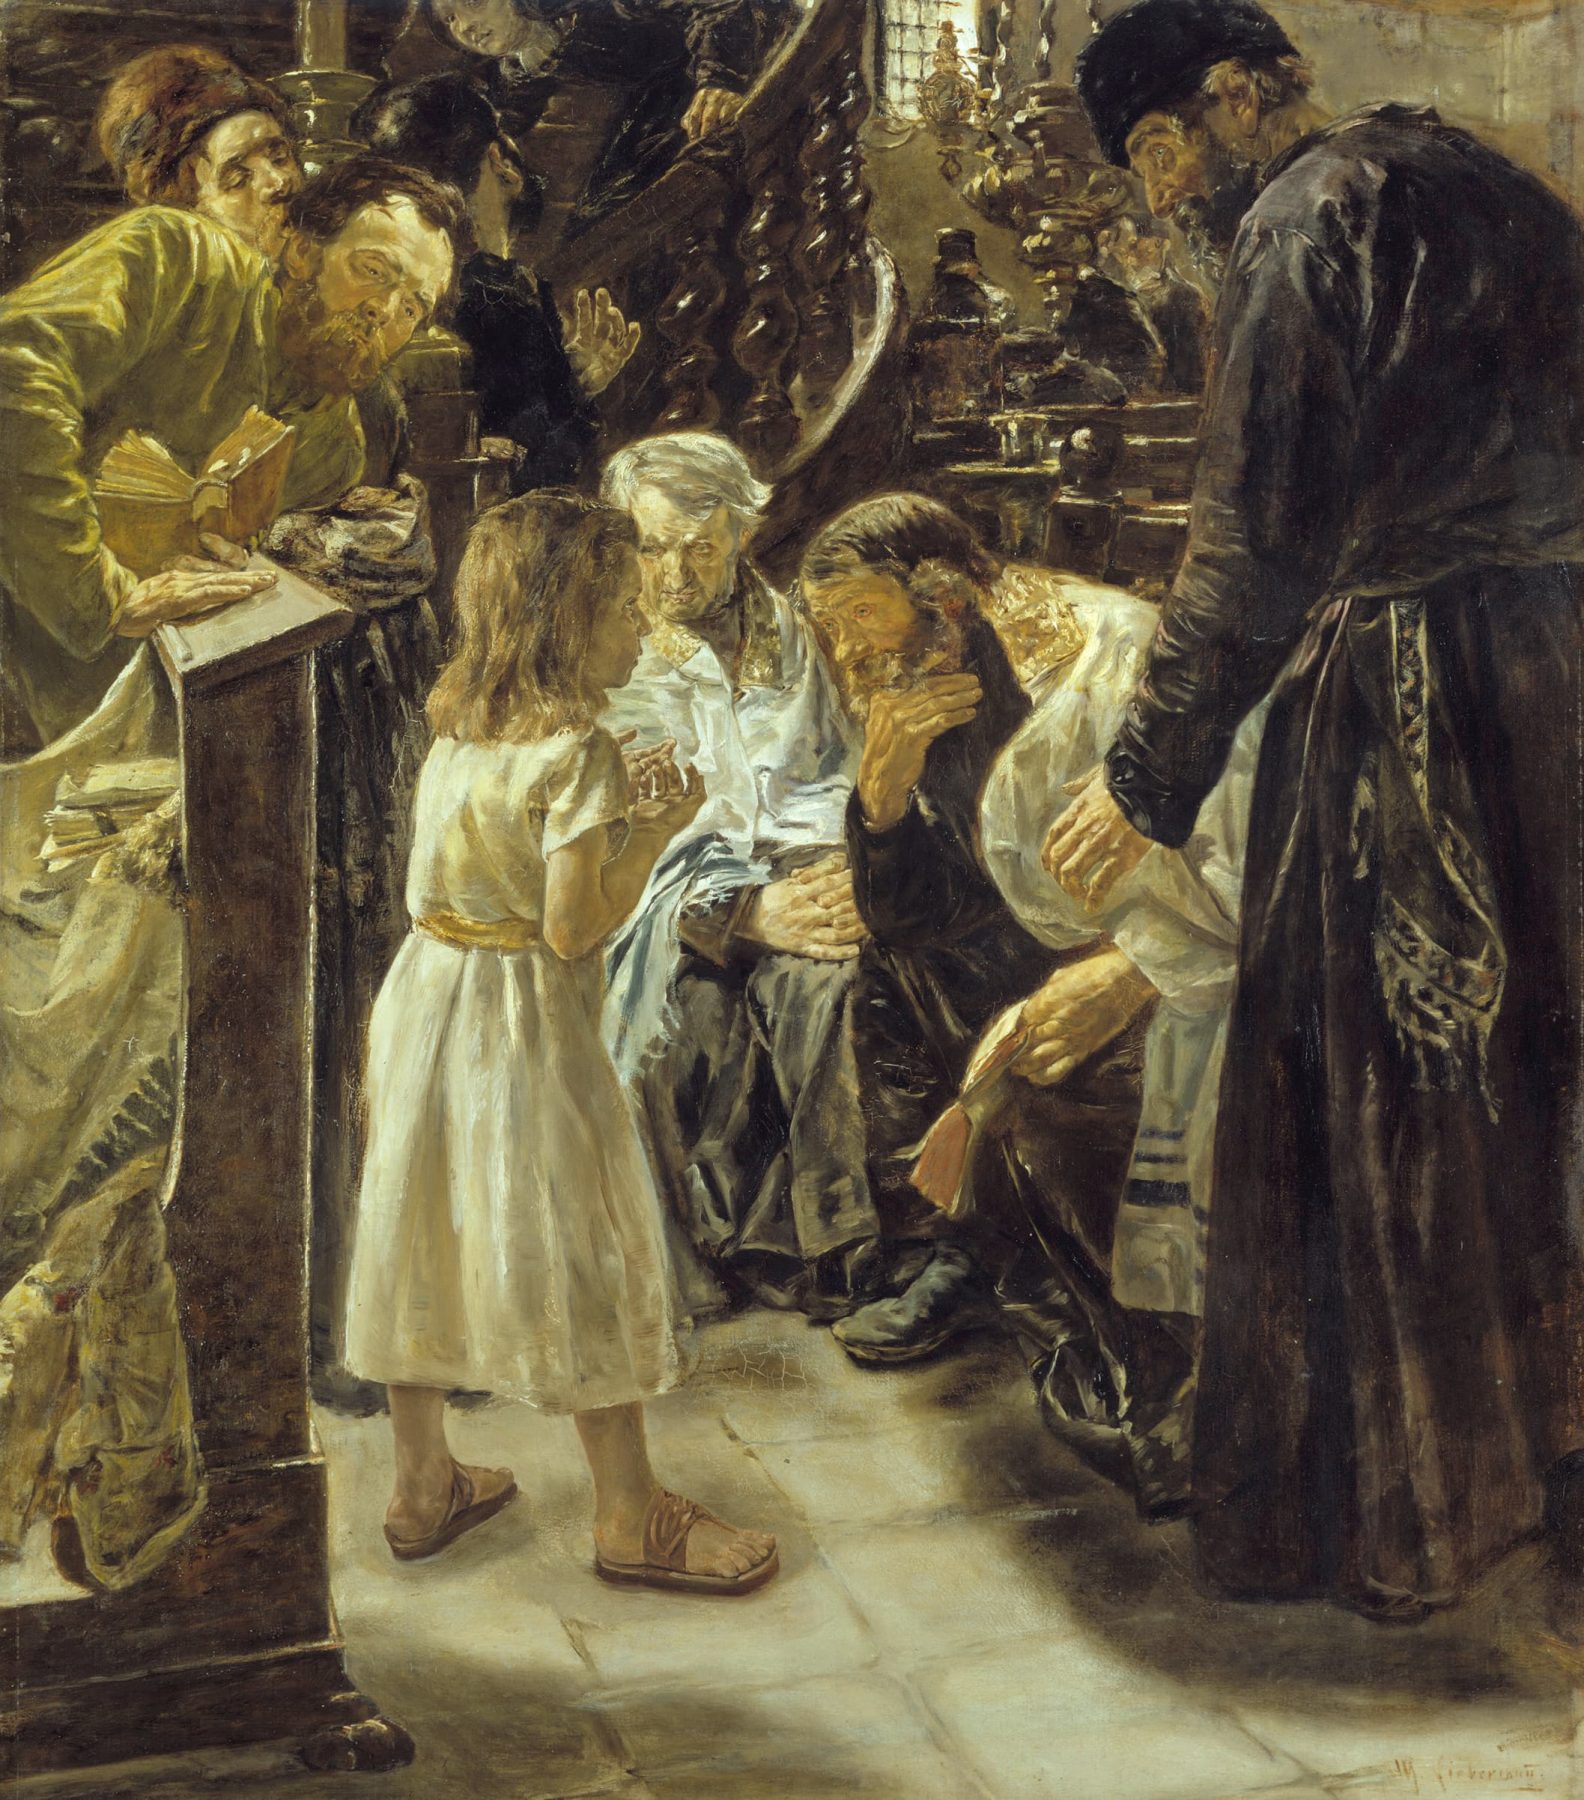 Gemälde mit mehreren Personen in altertümlicher Kleidung, die sich um einen kleinen Jungen beugen, der etwas zu erklären scheint.